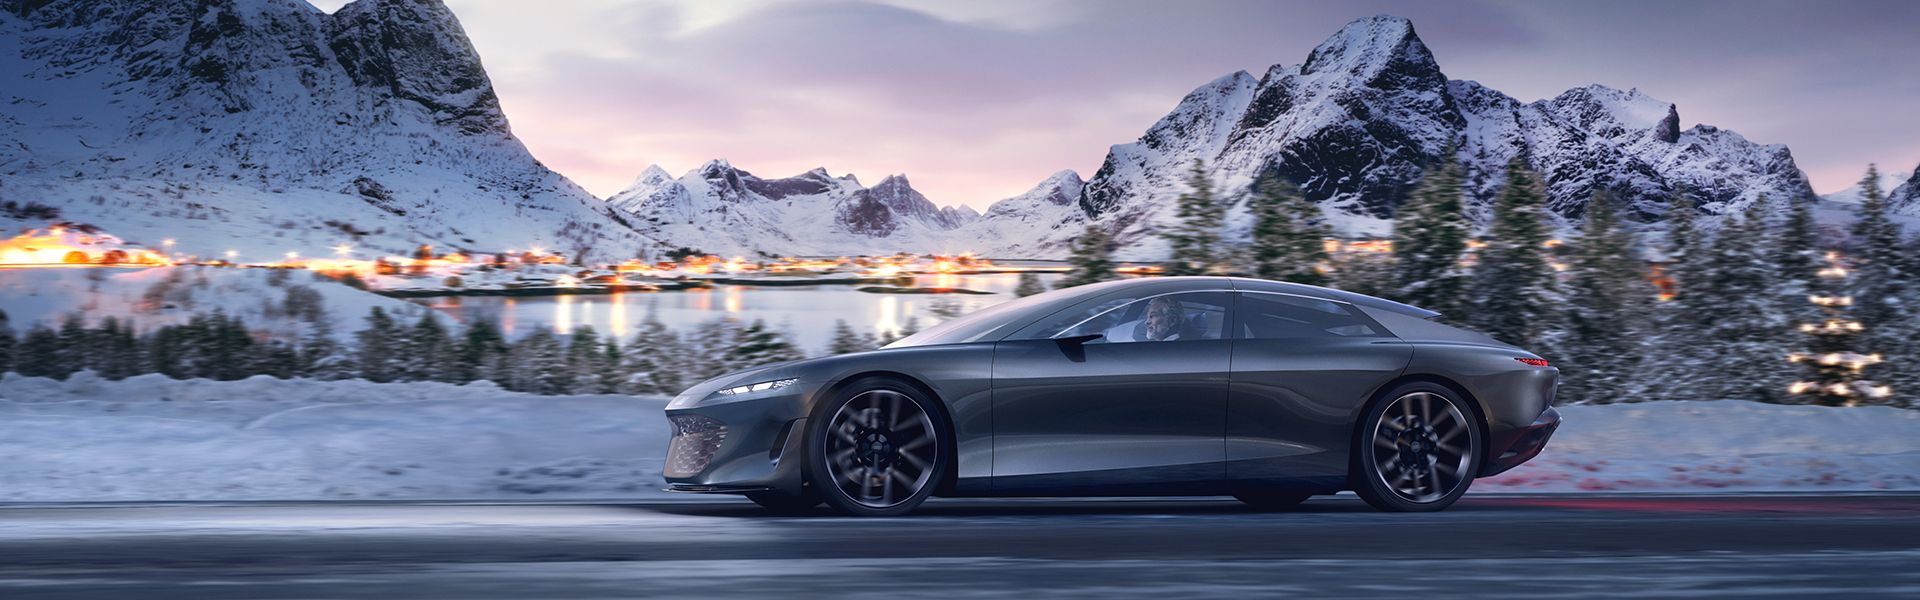 El Audi grandsphere concept circulando por la carretera con un paisaje nevado con montañas de fondo.